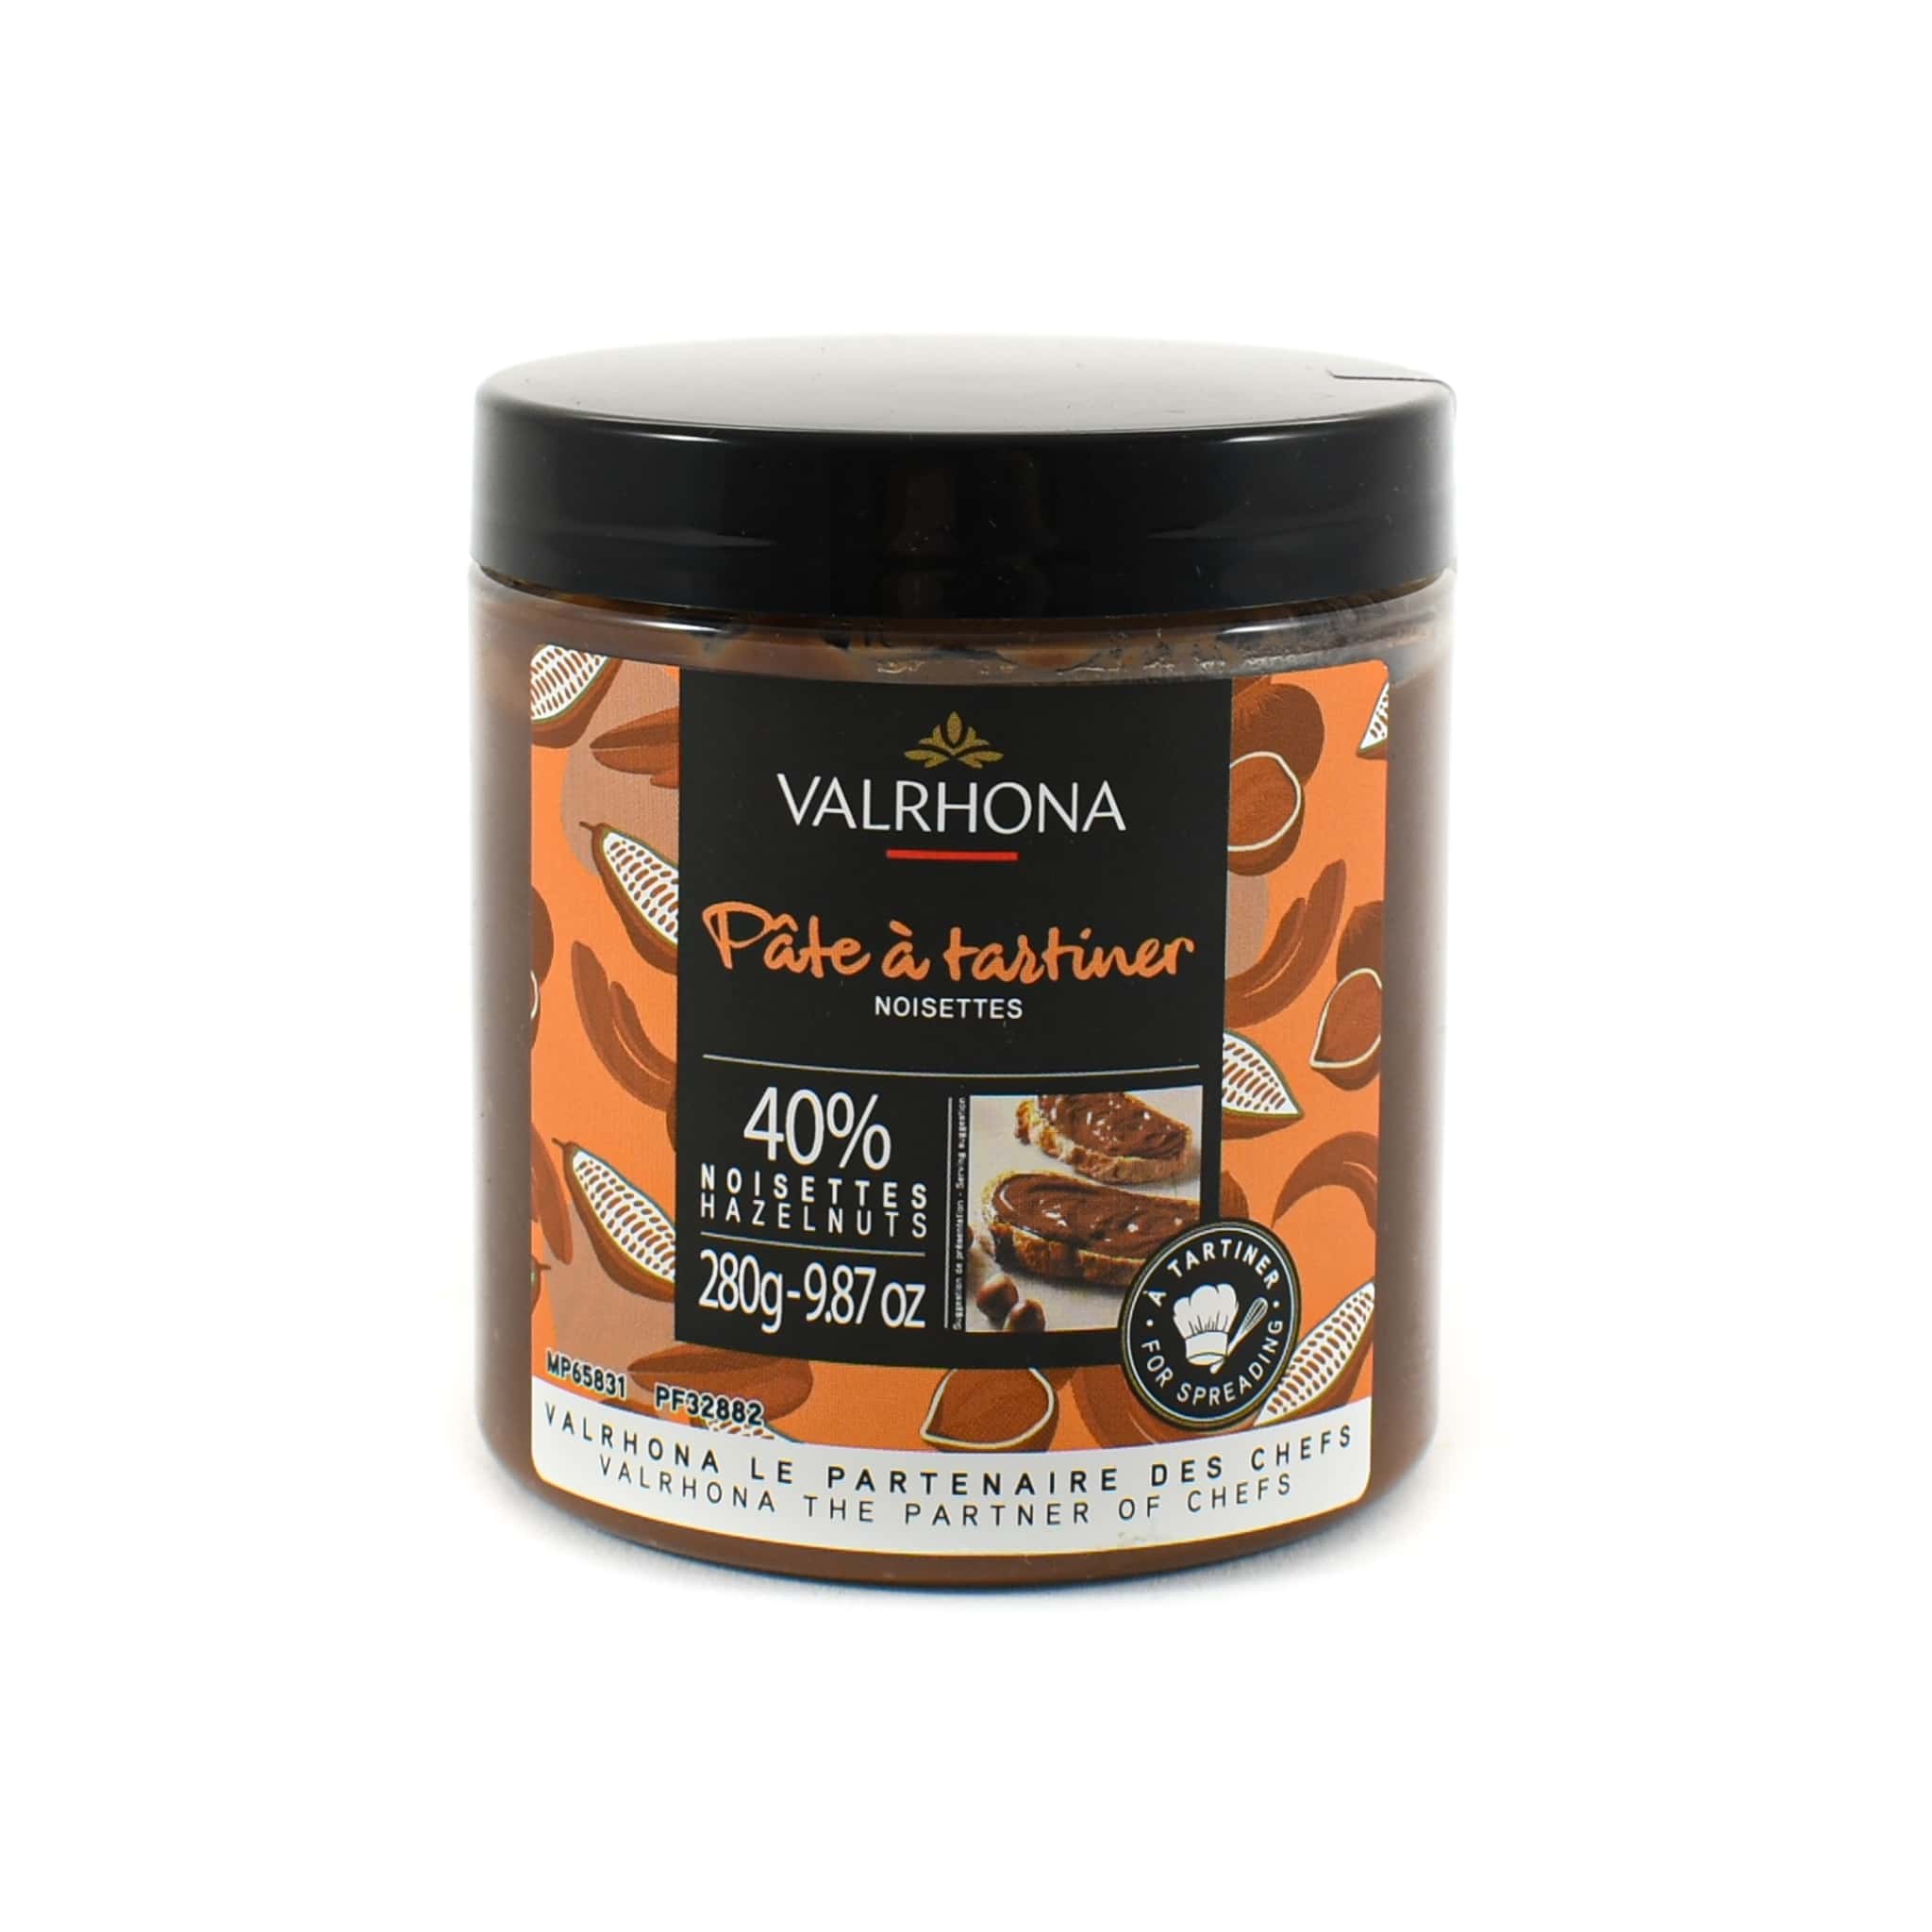 Valrhona Chocolate Hazelnut 40% Spread 280g